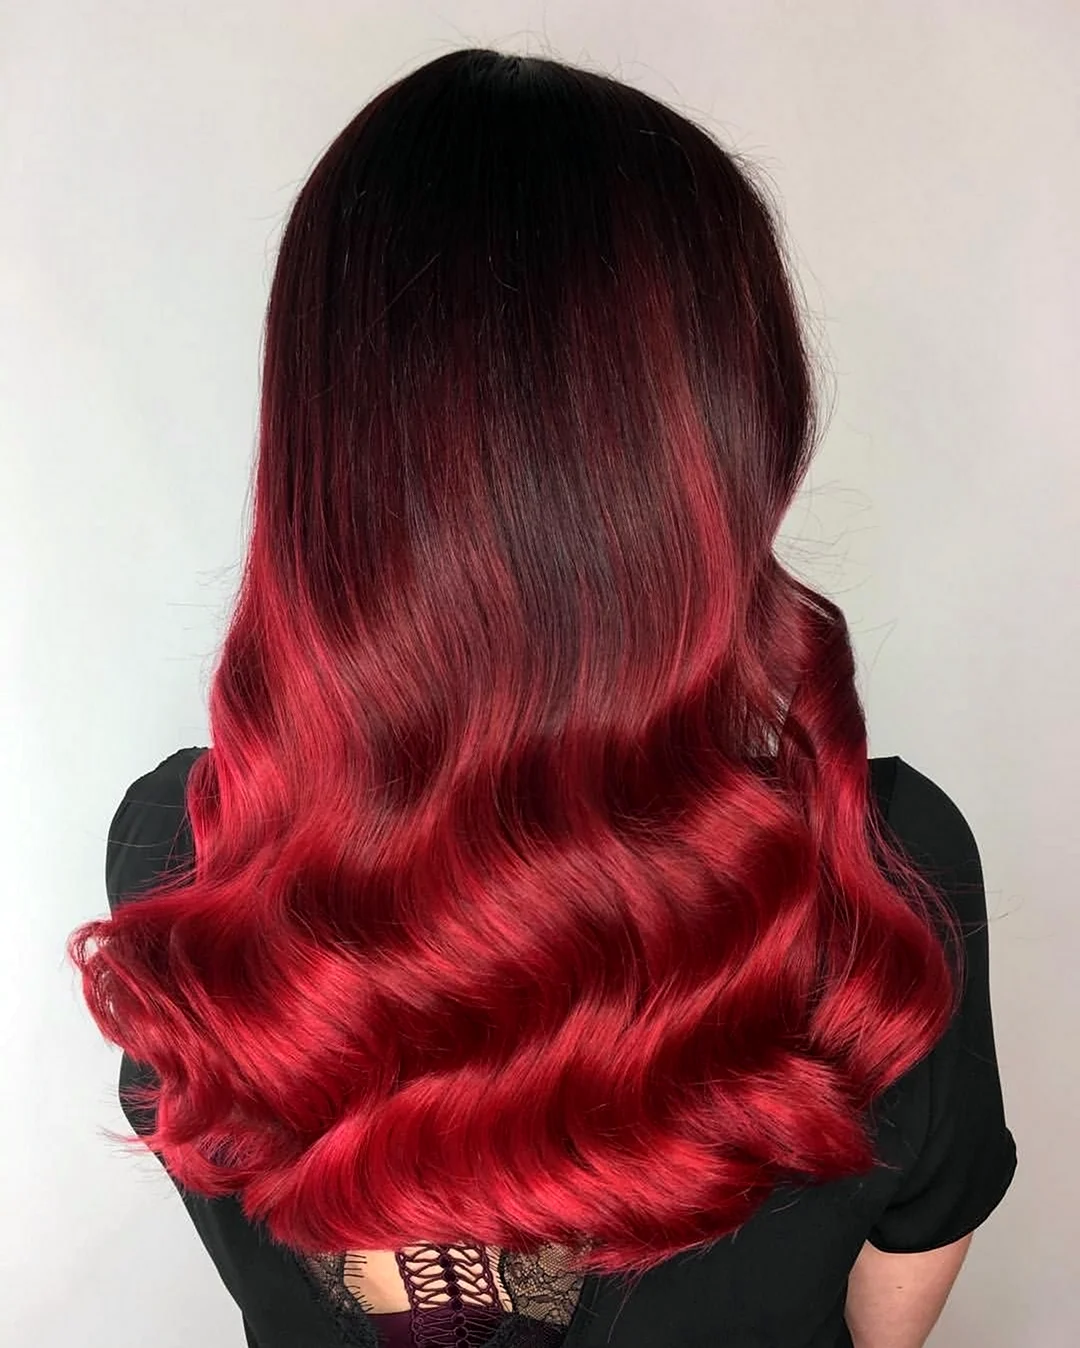 Рубиново красный цвет волос